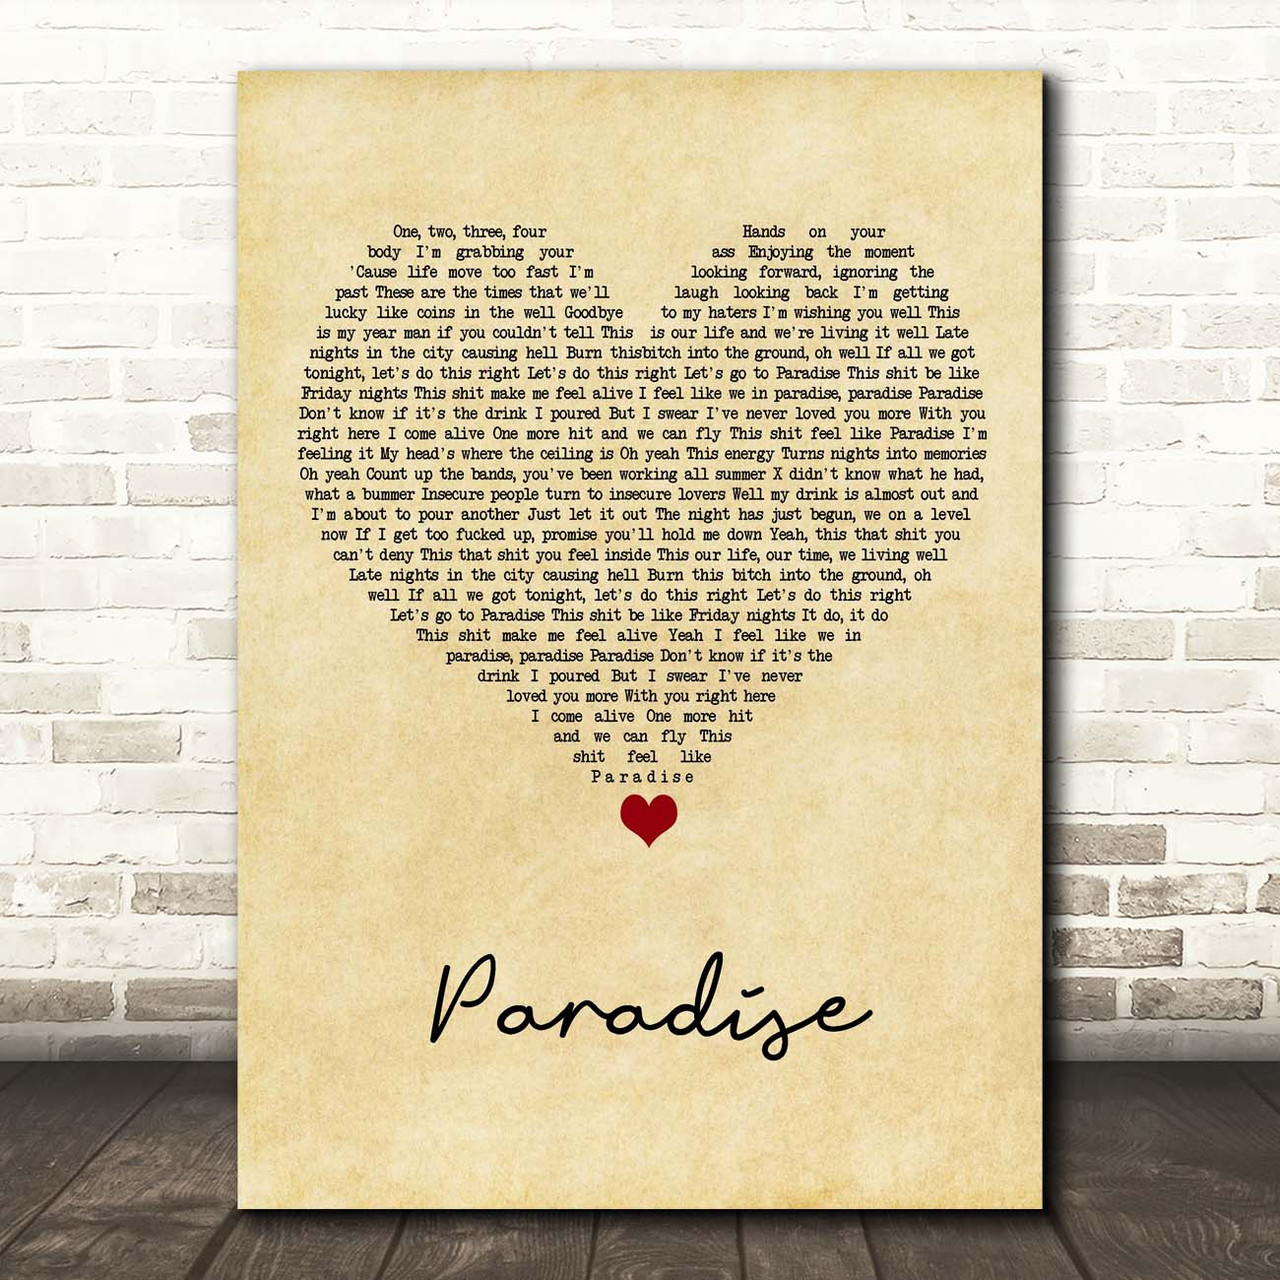 Bazzi - Paradise (Tradução)  Bazzi - Paradise (Tradução